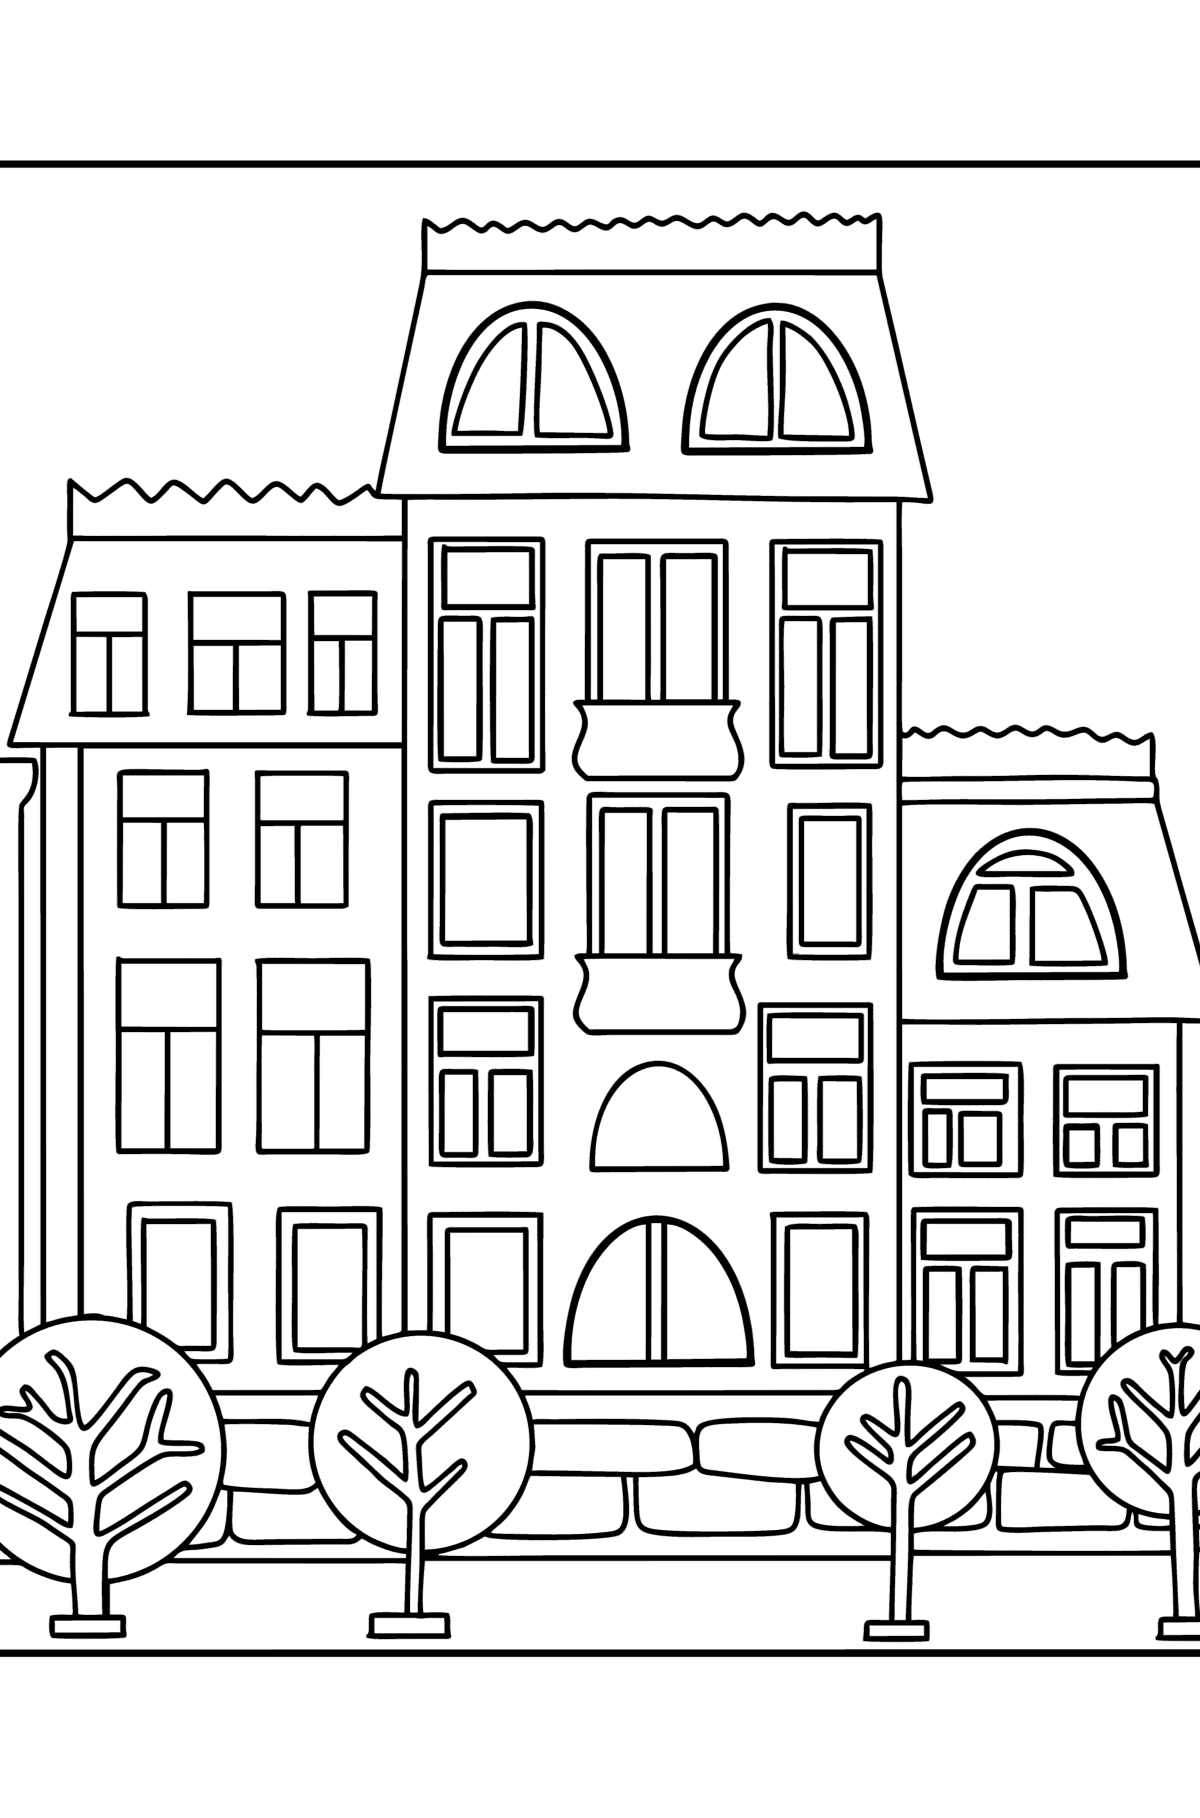 Dibujo de Edificio de varios pisos para colorear - Dibujos para Colorear para Niños